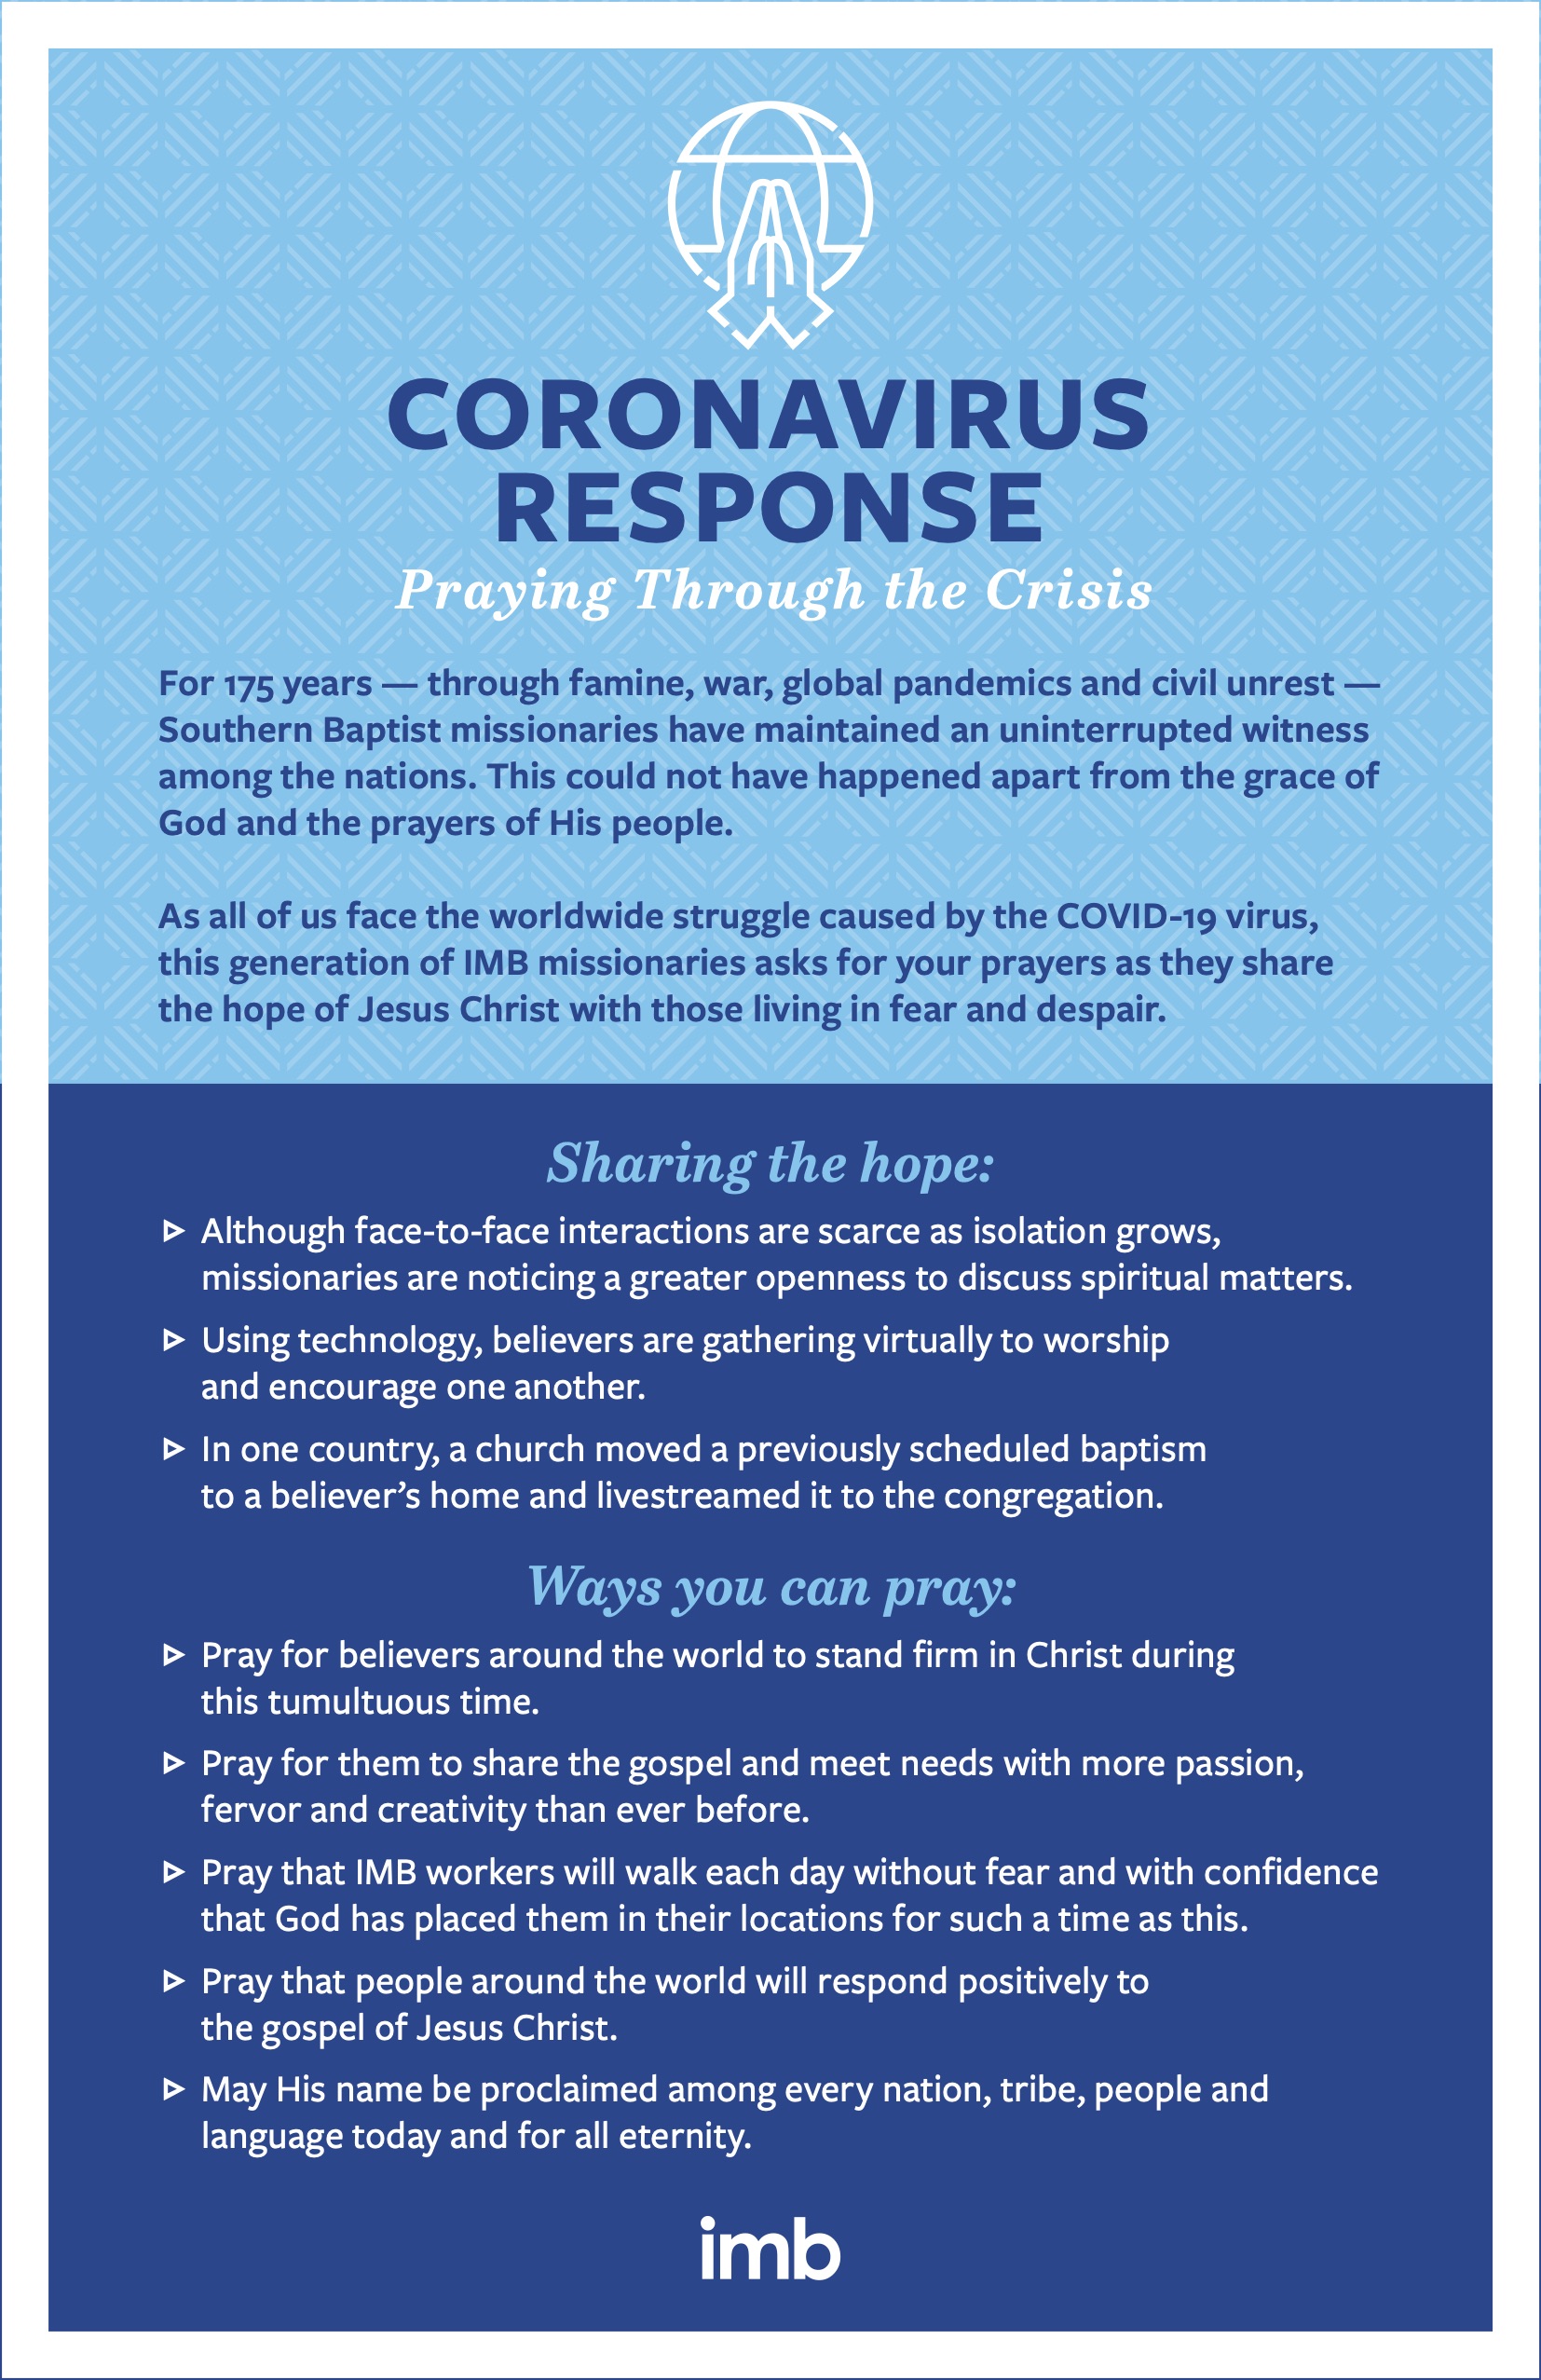 Coronavirus Response Prayer Guide